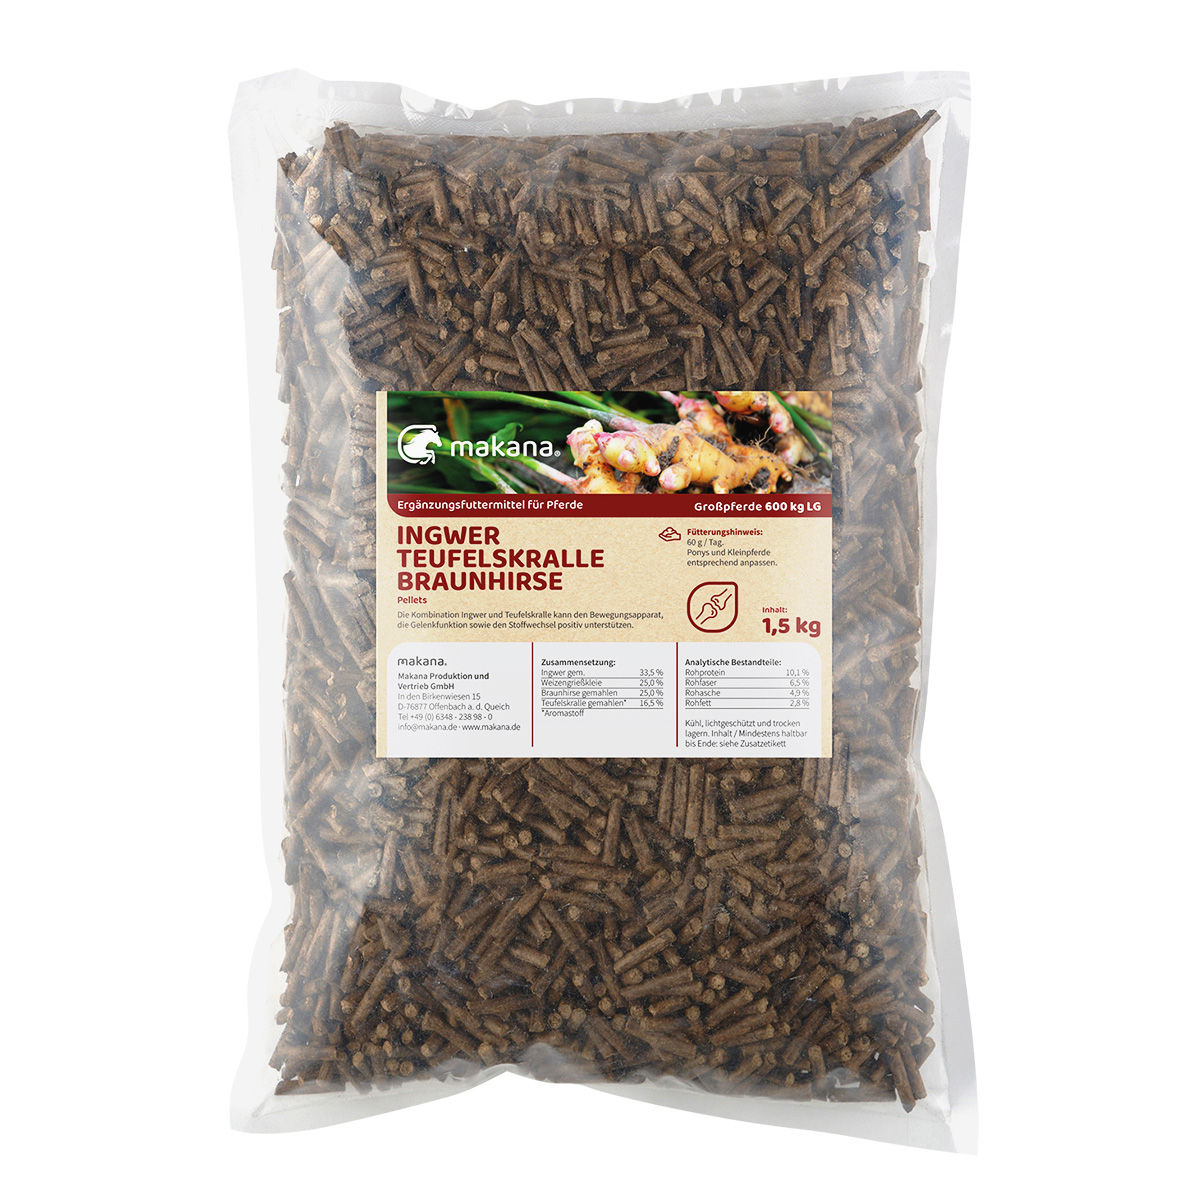 Makana Ingwer/Teufelskralle/Braunhirse-Pellets, 1,5 kg Beutel